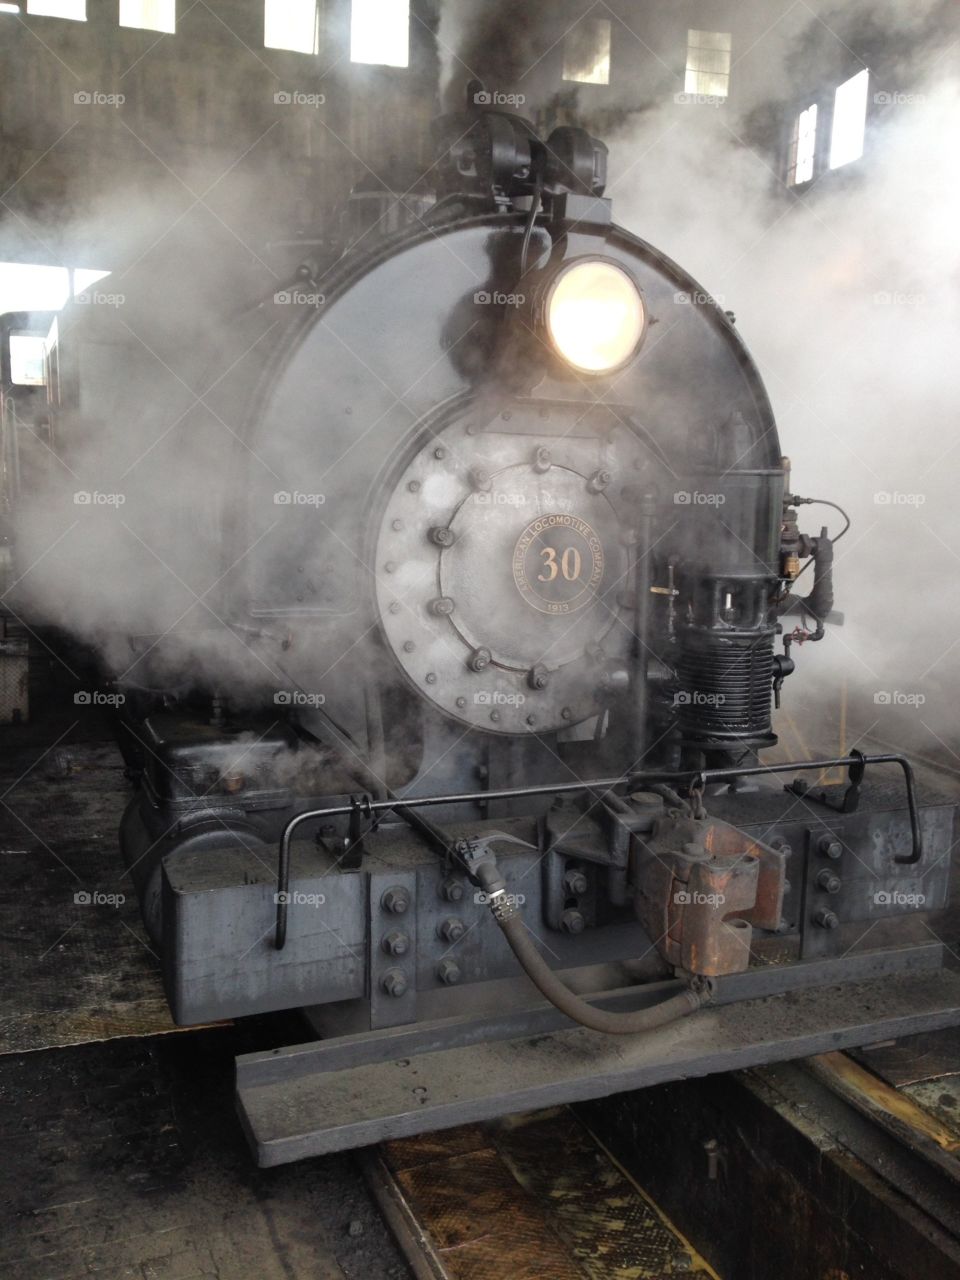 No. 30 under steam